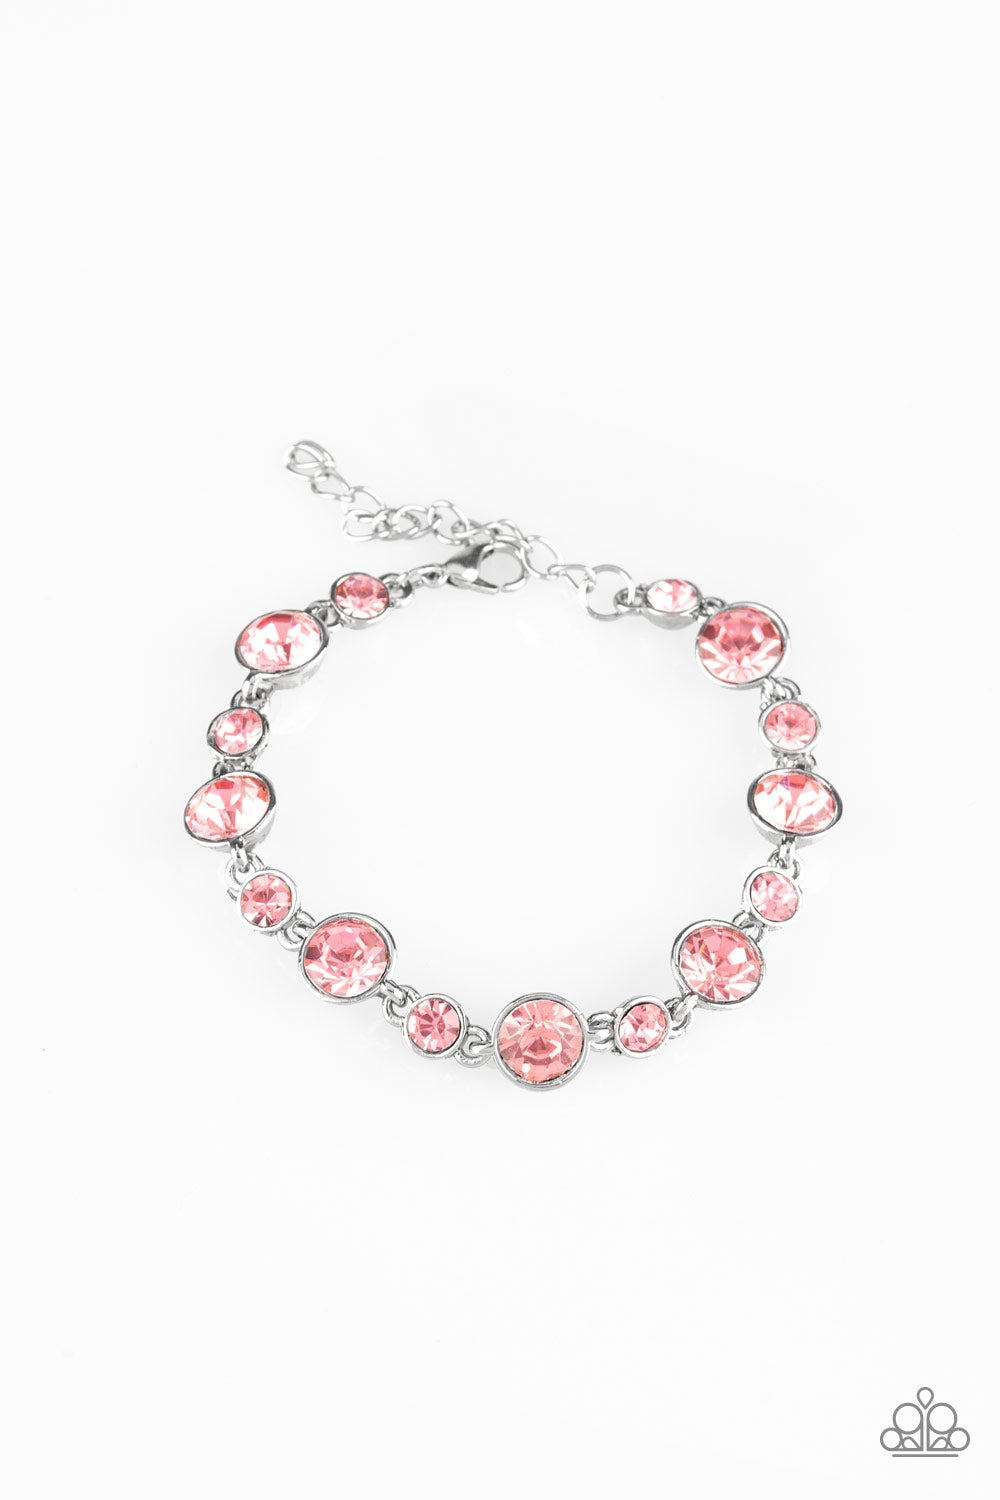 Starstruck Sparkle Pink Paparazzi Bracelet Cashmere Pink Jewels - Cashmere Pink Jewels & Accessories, Cashmere Pink Jewels & Accessories - Paparazzi